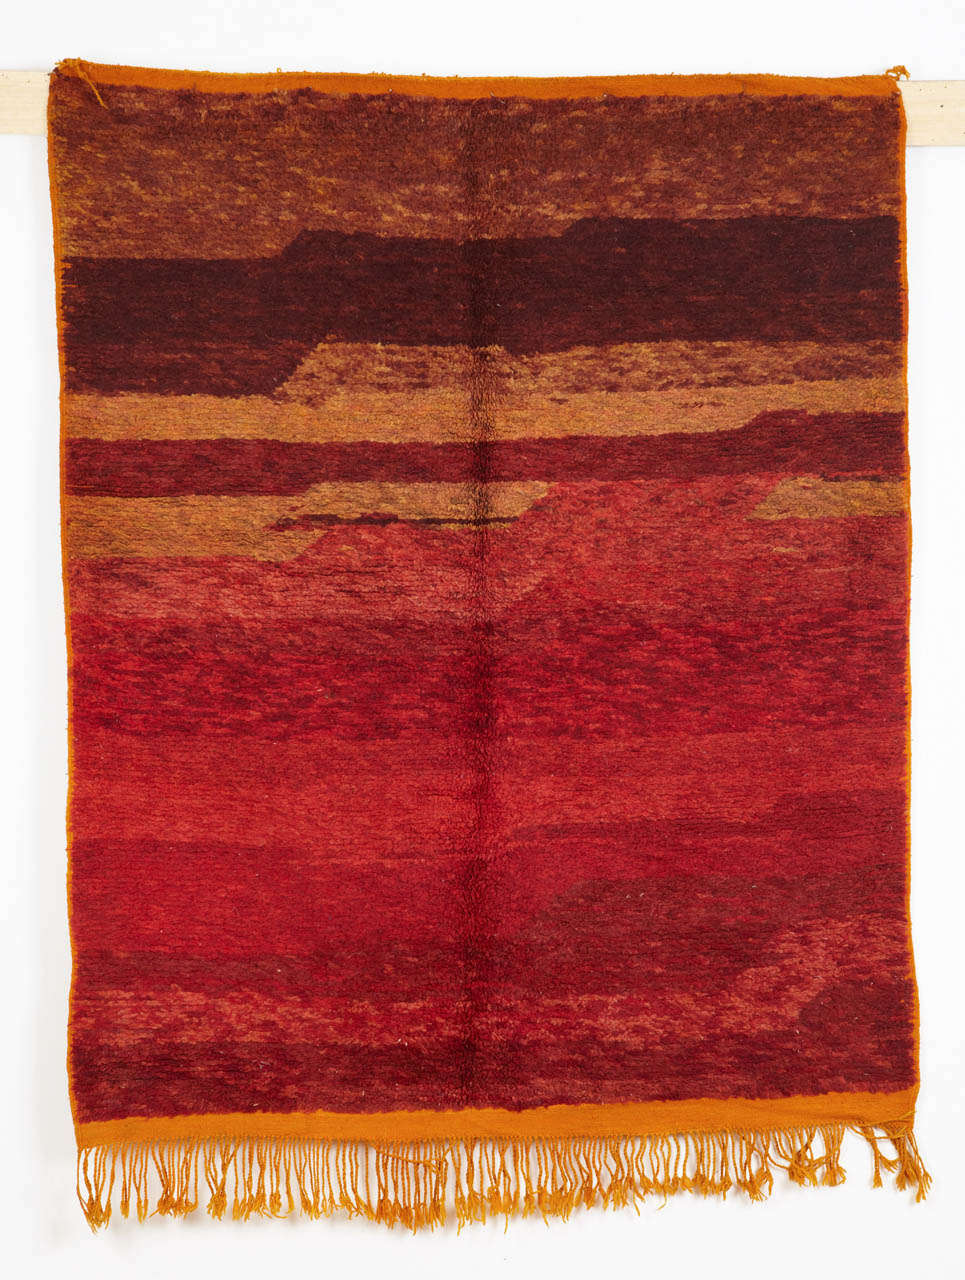 Rare tapis berbère du Moyen Atlas de la région de Zemmour, qui se distingue par le fait qu'il présente des poils sur les deux faces - rouge en différentes gradations sur la face exposée et orange dans de nombreuses nuances sur la face arrière.